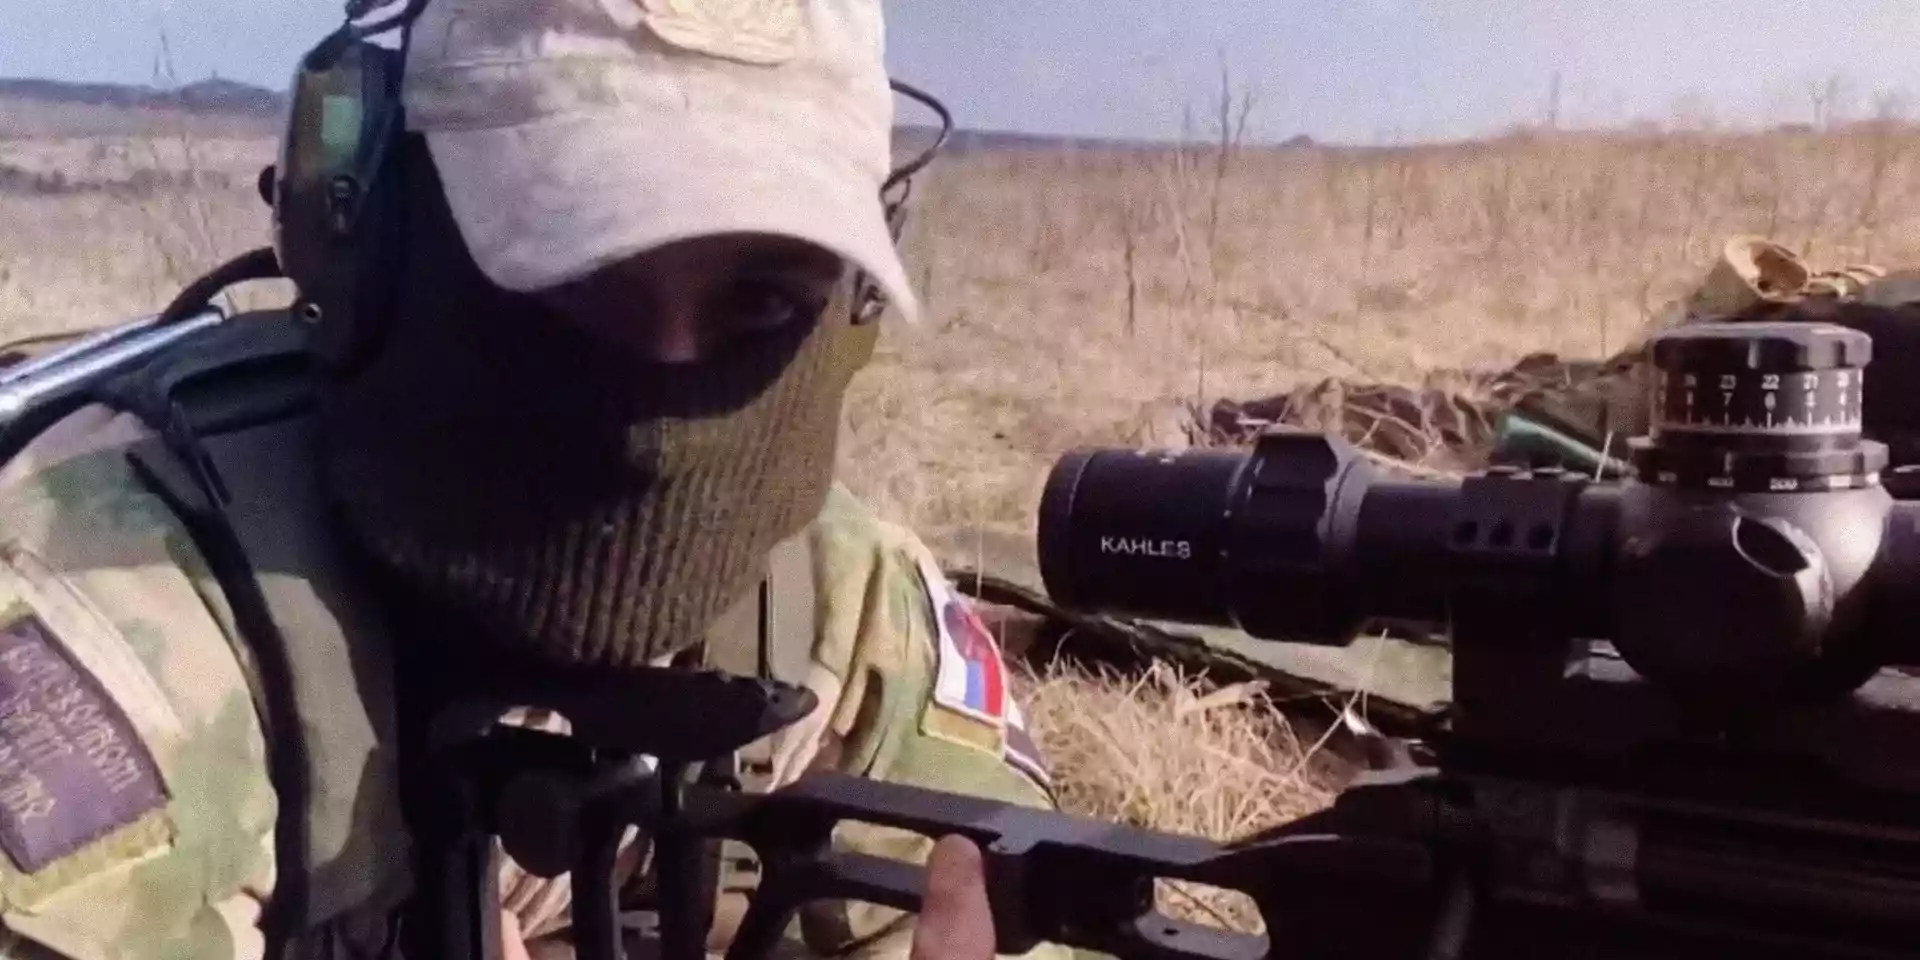 ЗМІ знайшли у російських снайперів на війні приціли західного виробництва: імпортують нібито для полювання